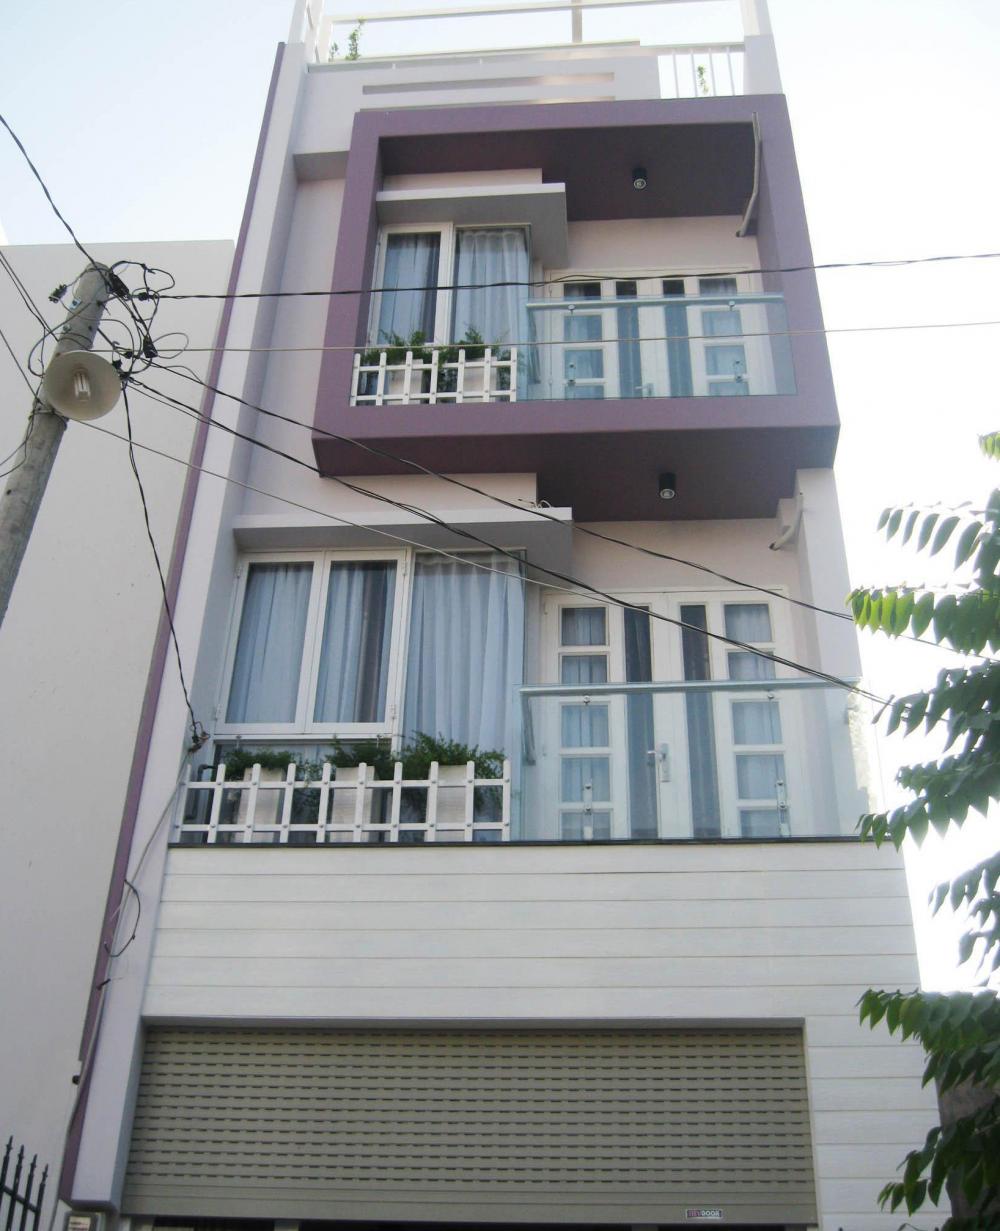 Bán nhà đường Bàu Cát, P. 14, Q. Tân Bình, DT 4x17m, 2 lầu, giá 6.7 tỷ(TL)